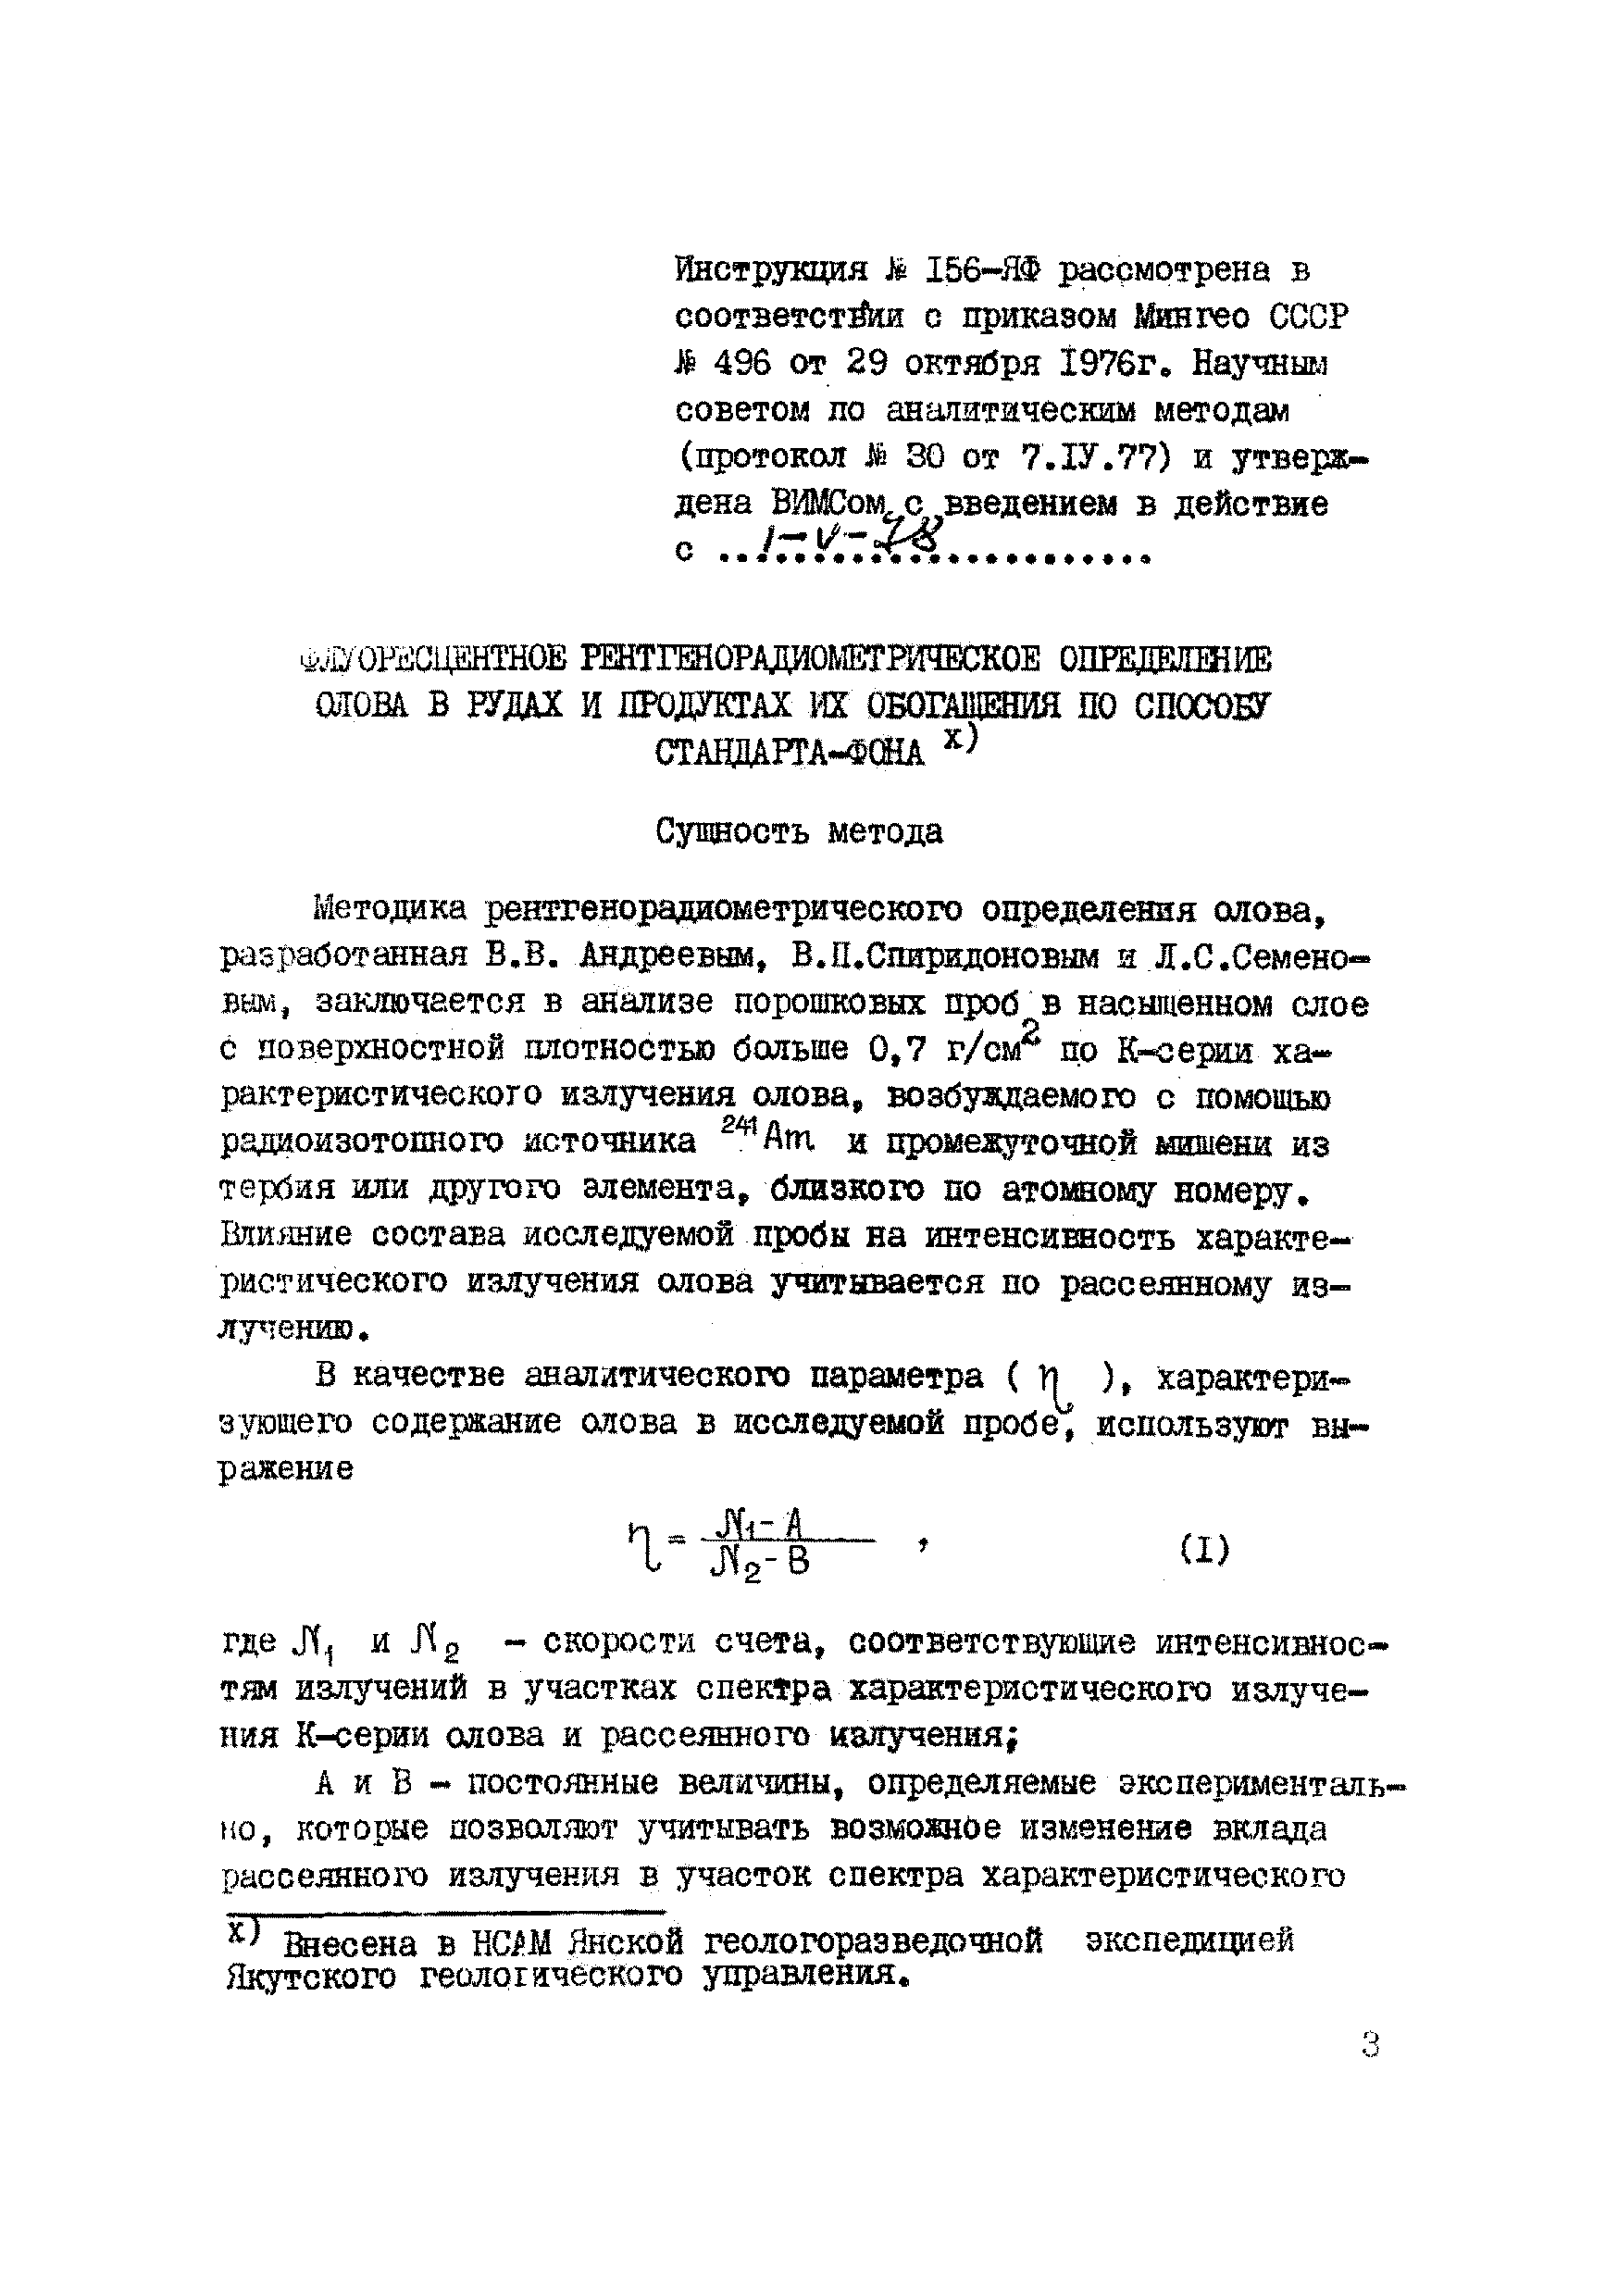 Инструкция НСАМ 156-ЯФ